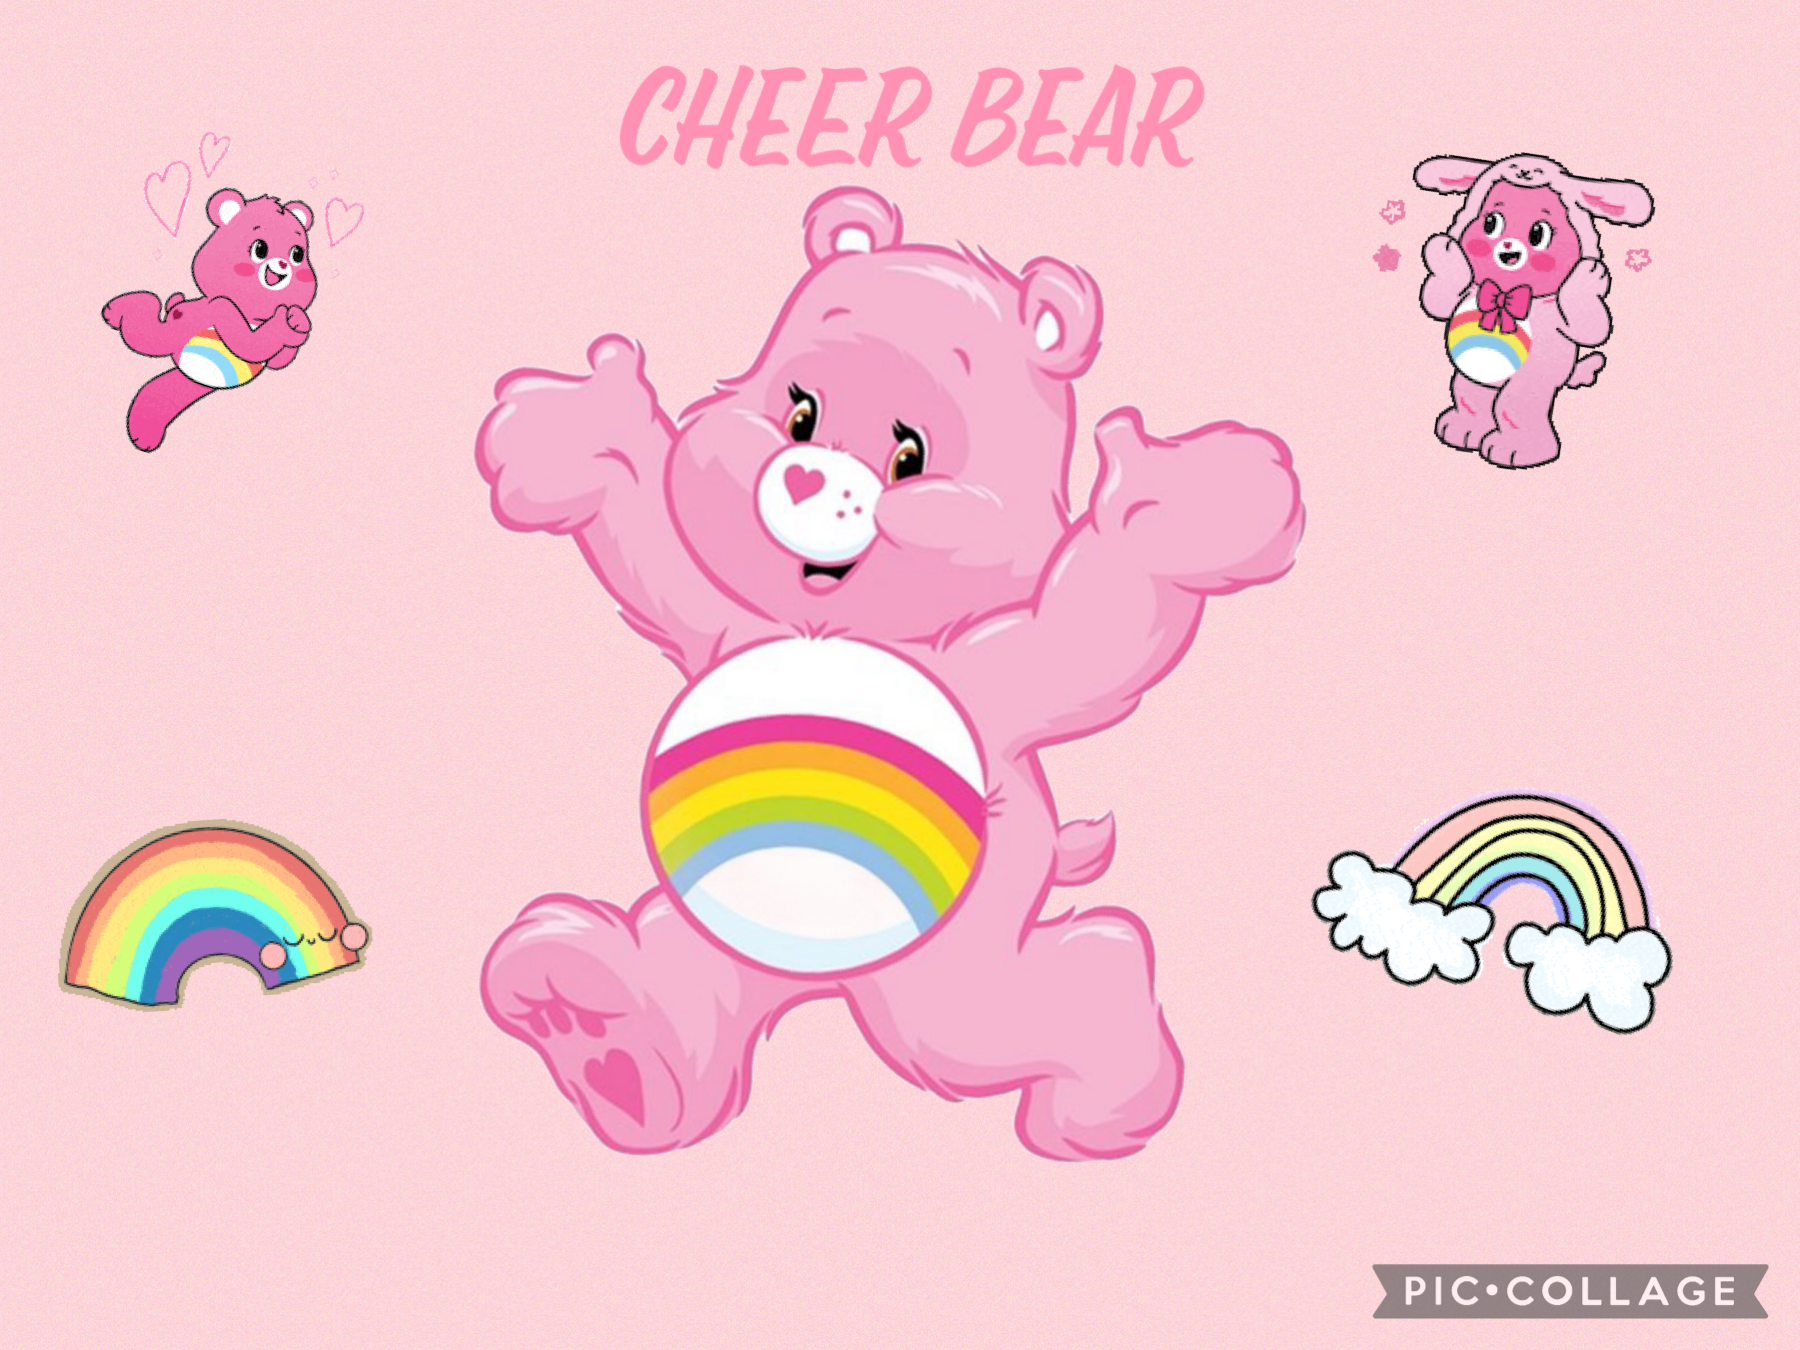 Cheer bear